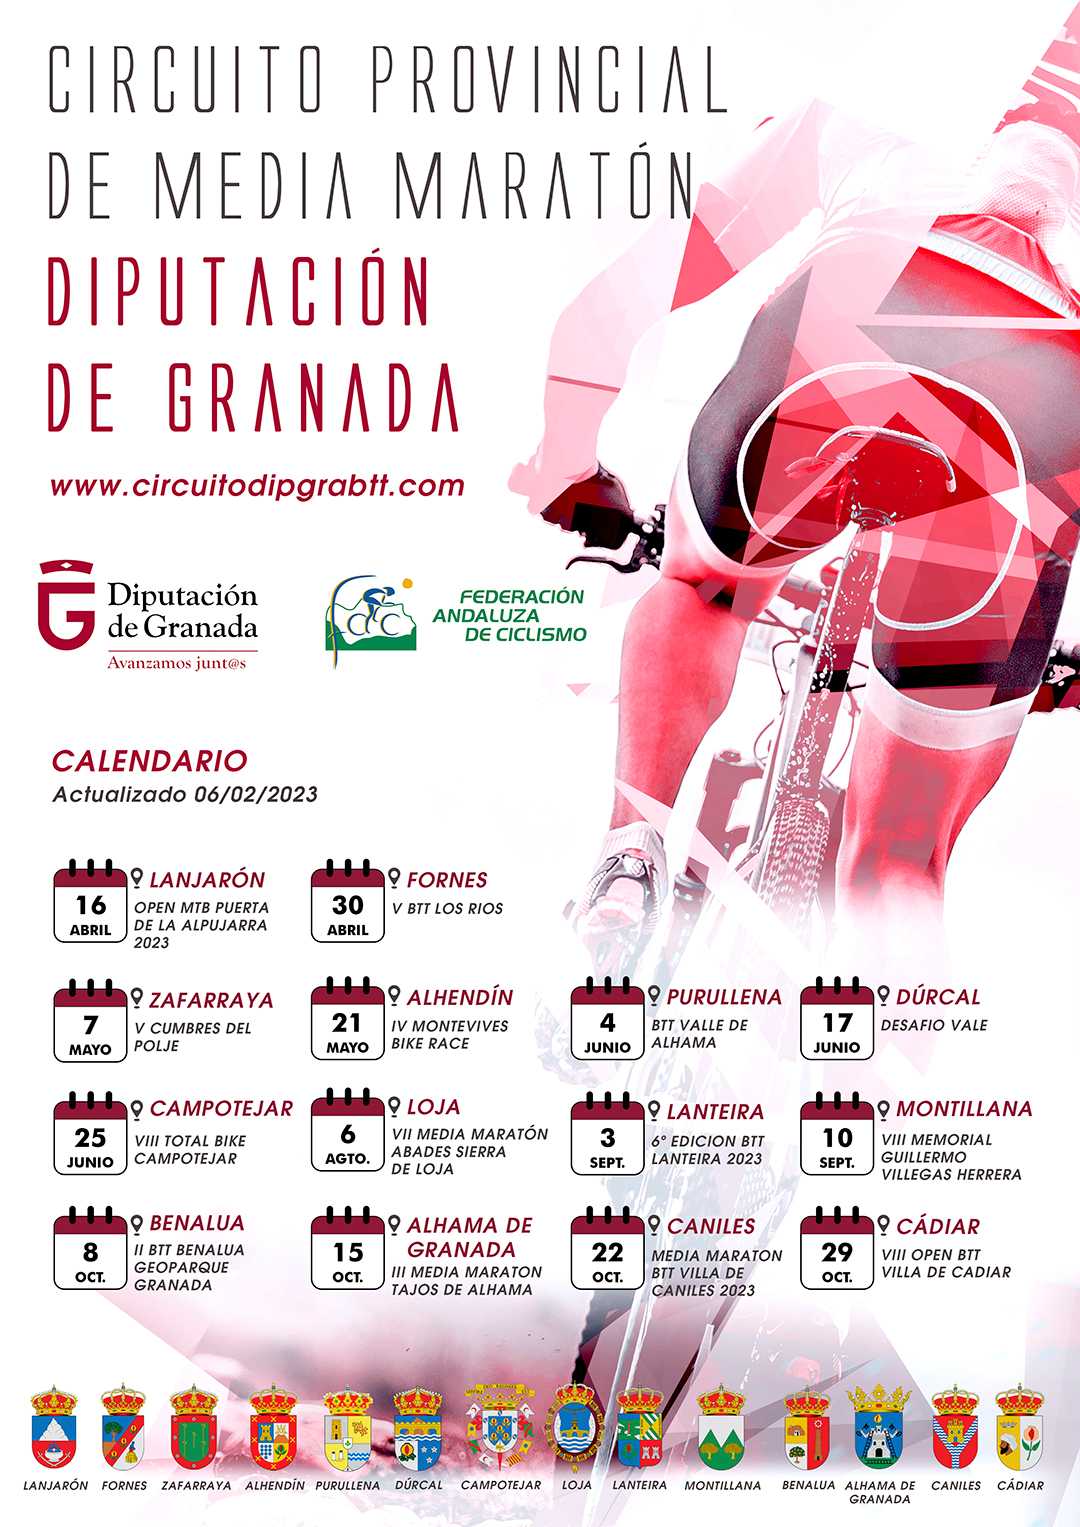 Fechas del Circuito Provincial de Media Maratón Diputación de Granada 2023